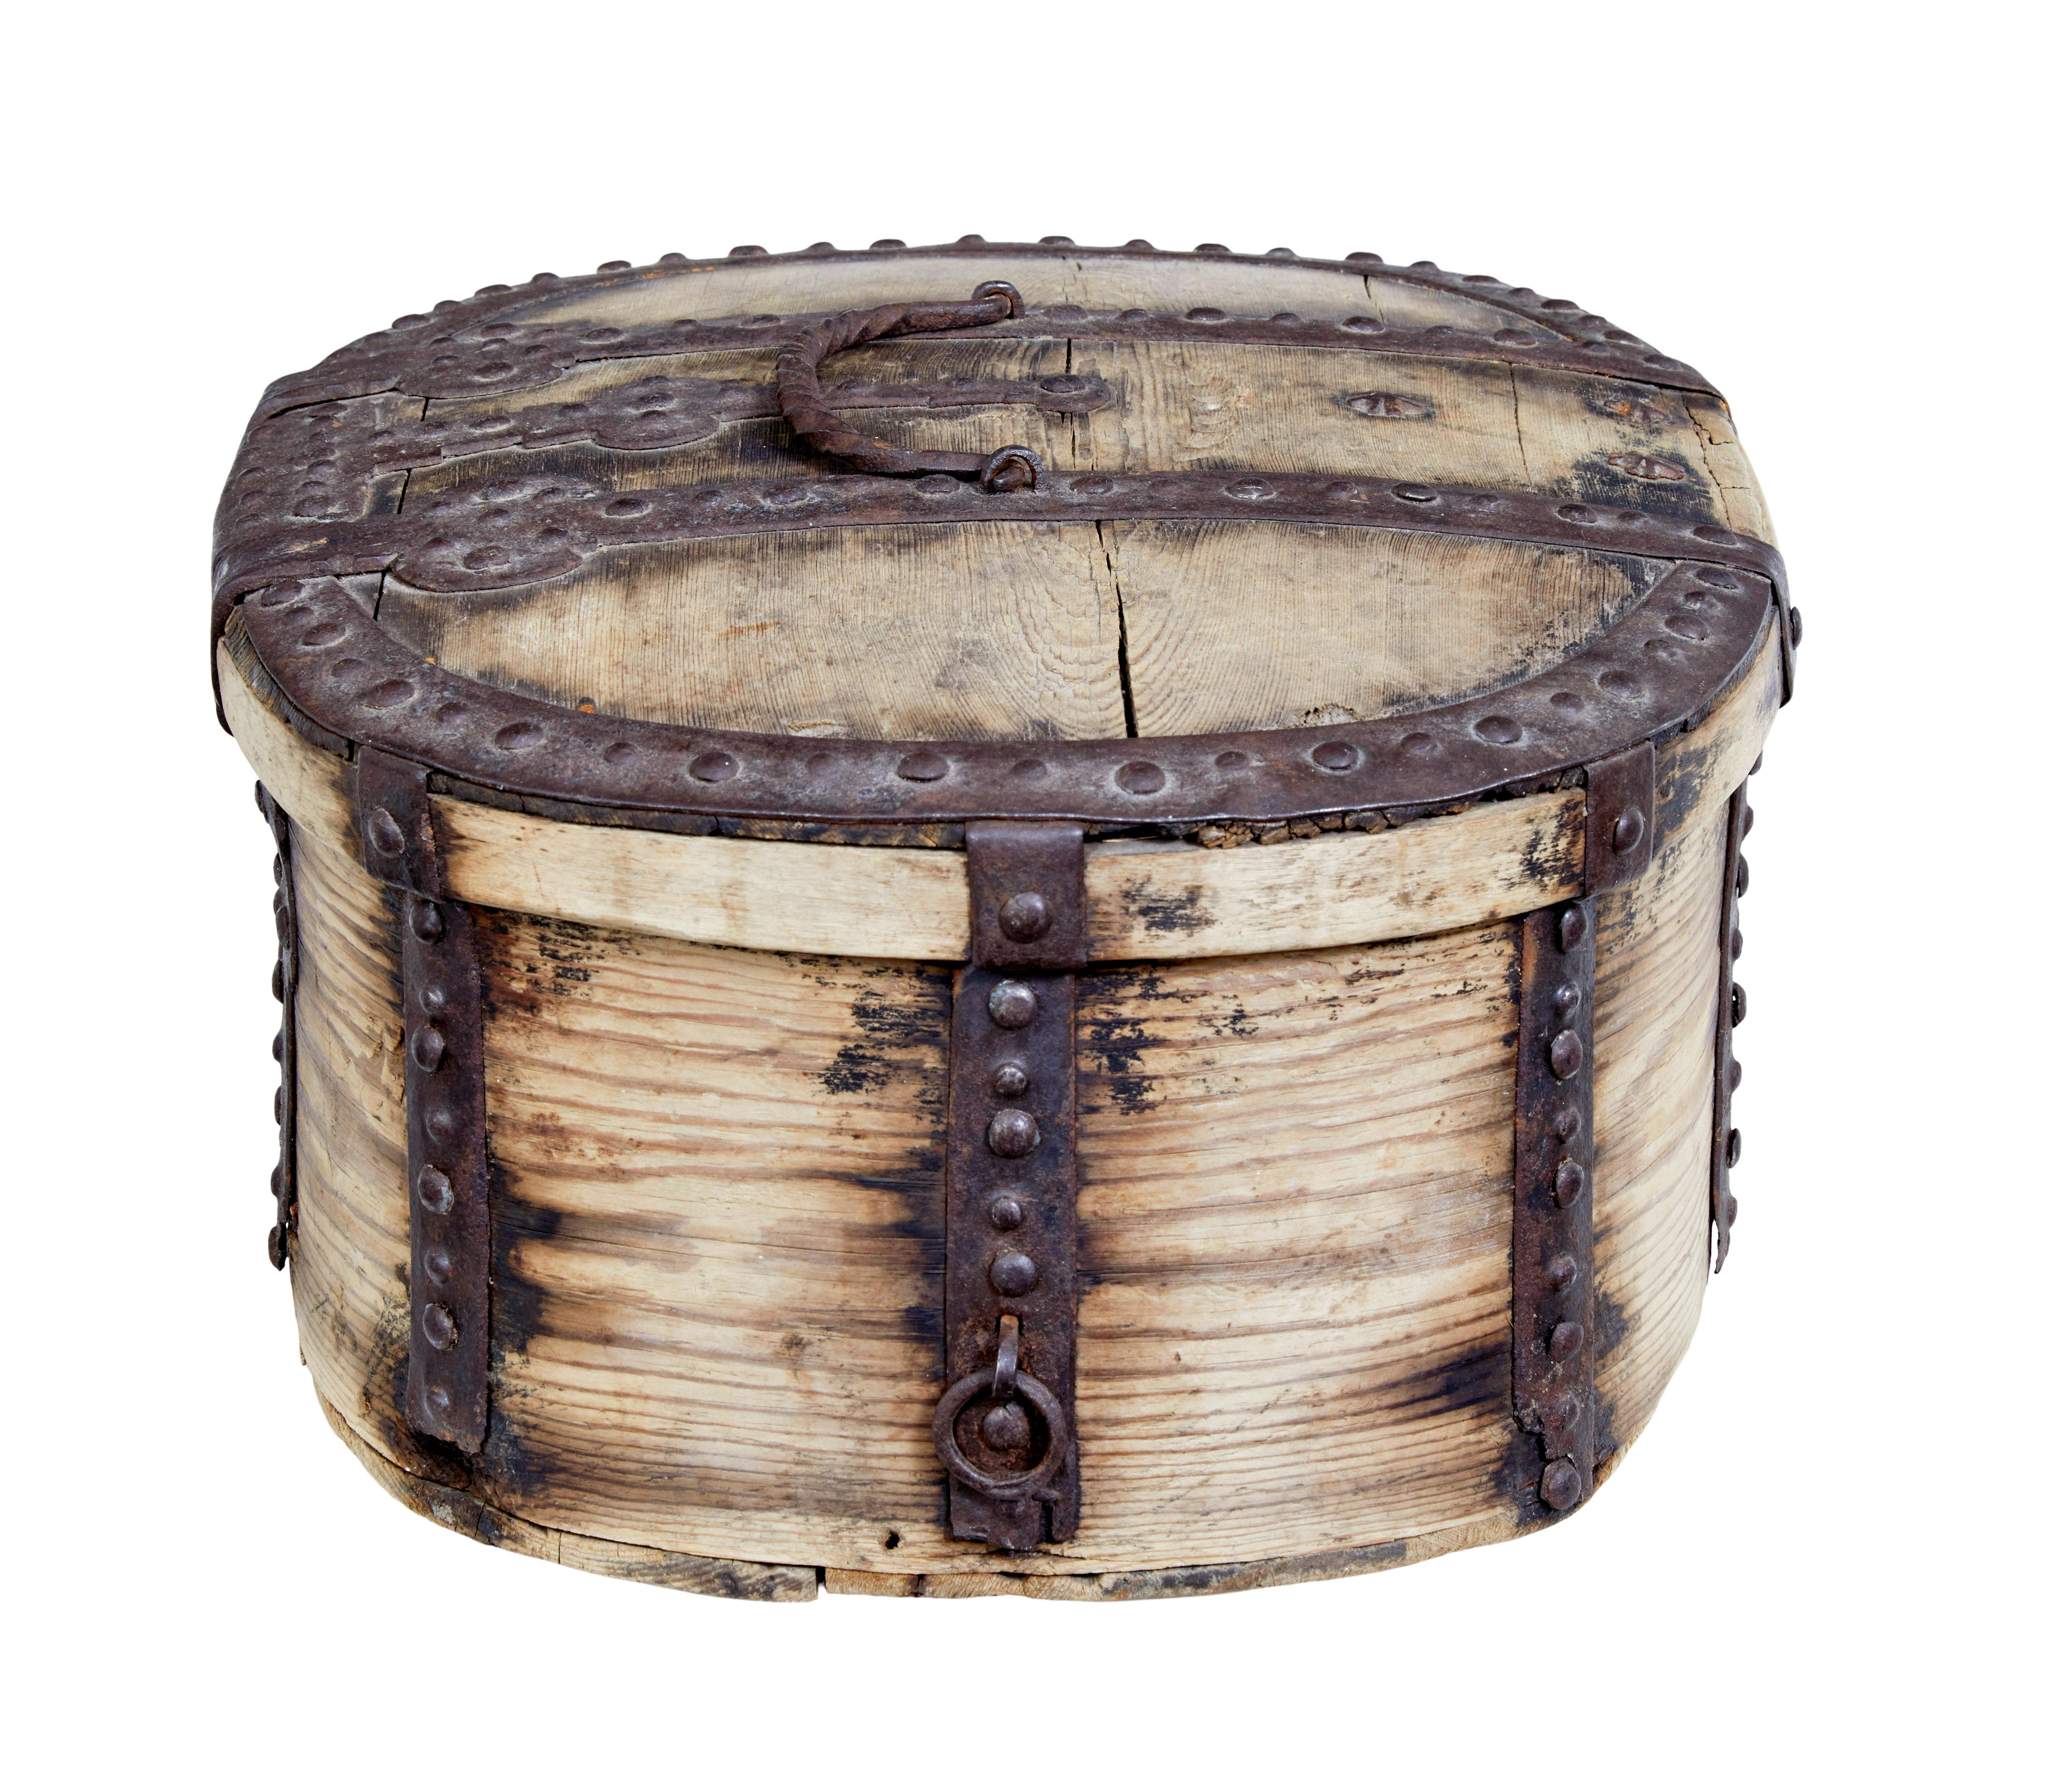 Mitte des 18. Jahrhunderts Schwedische Kiefer Barock Metall gebundene Box um 1740.

Ovale dekorative Dose aus dem Barock von guter Qualität.  Reichlich verziert und mit Eisenband, Einfassung und Scharnieren gebunden.  Alle mit